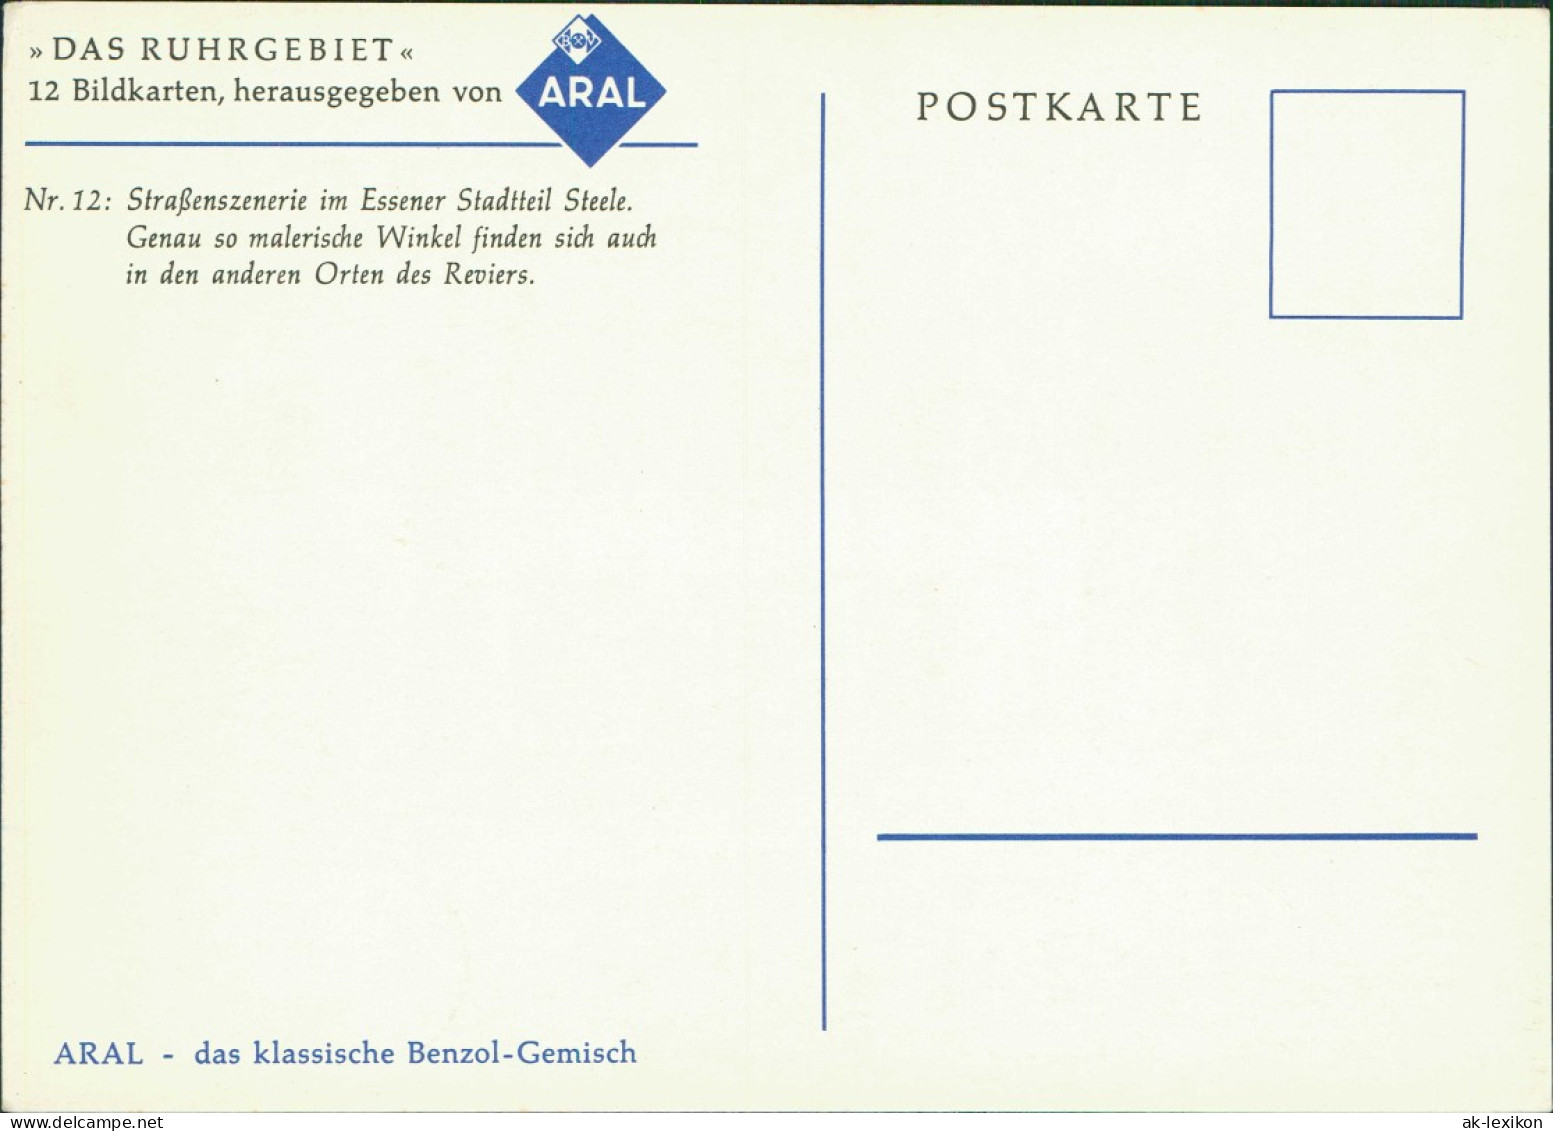 Steele-Essen (Ruhr) Straßenszenerie ARAL Werbekarte Künstlerkarte 1960 - Essen